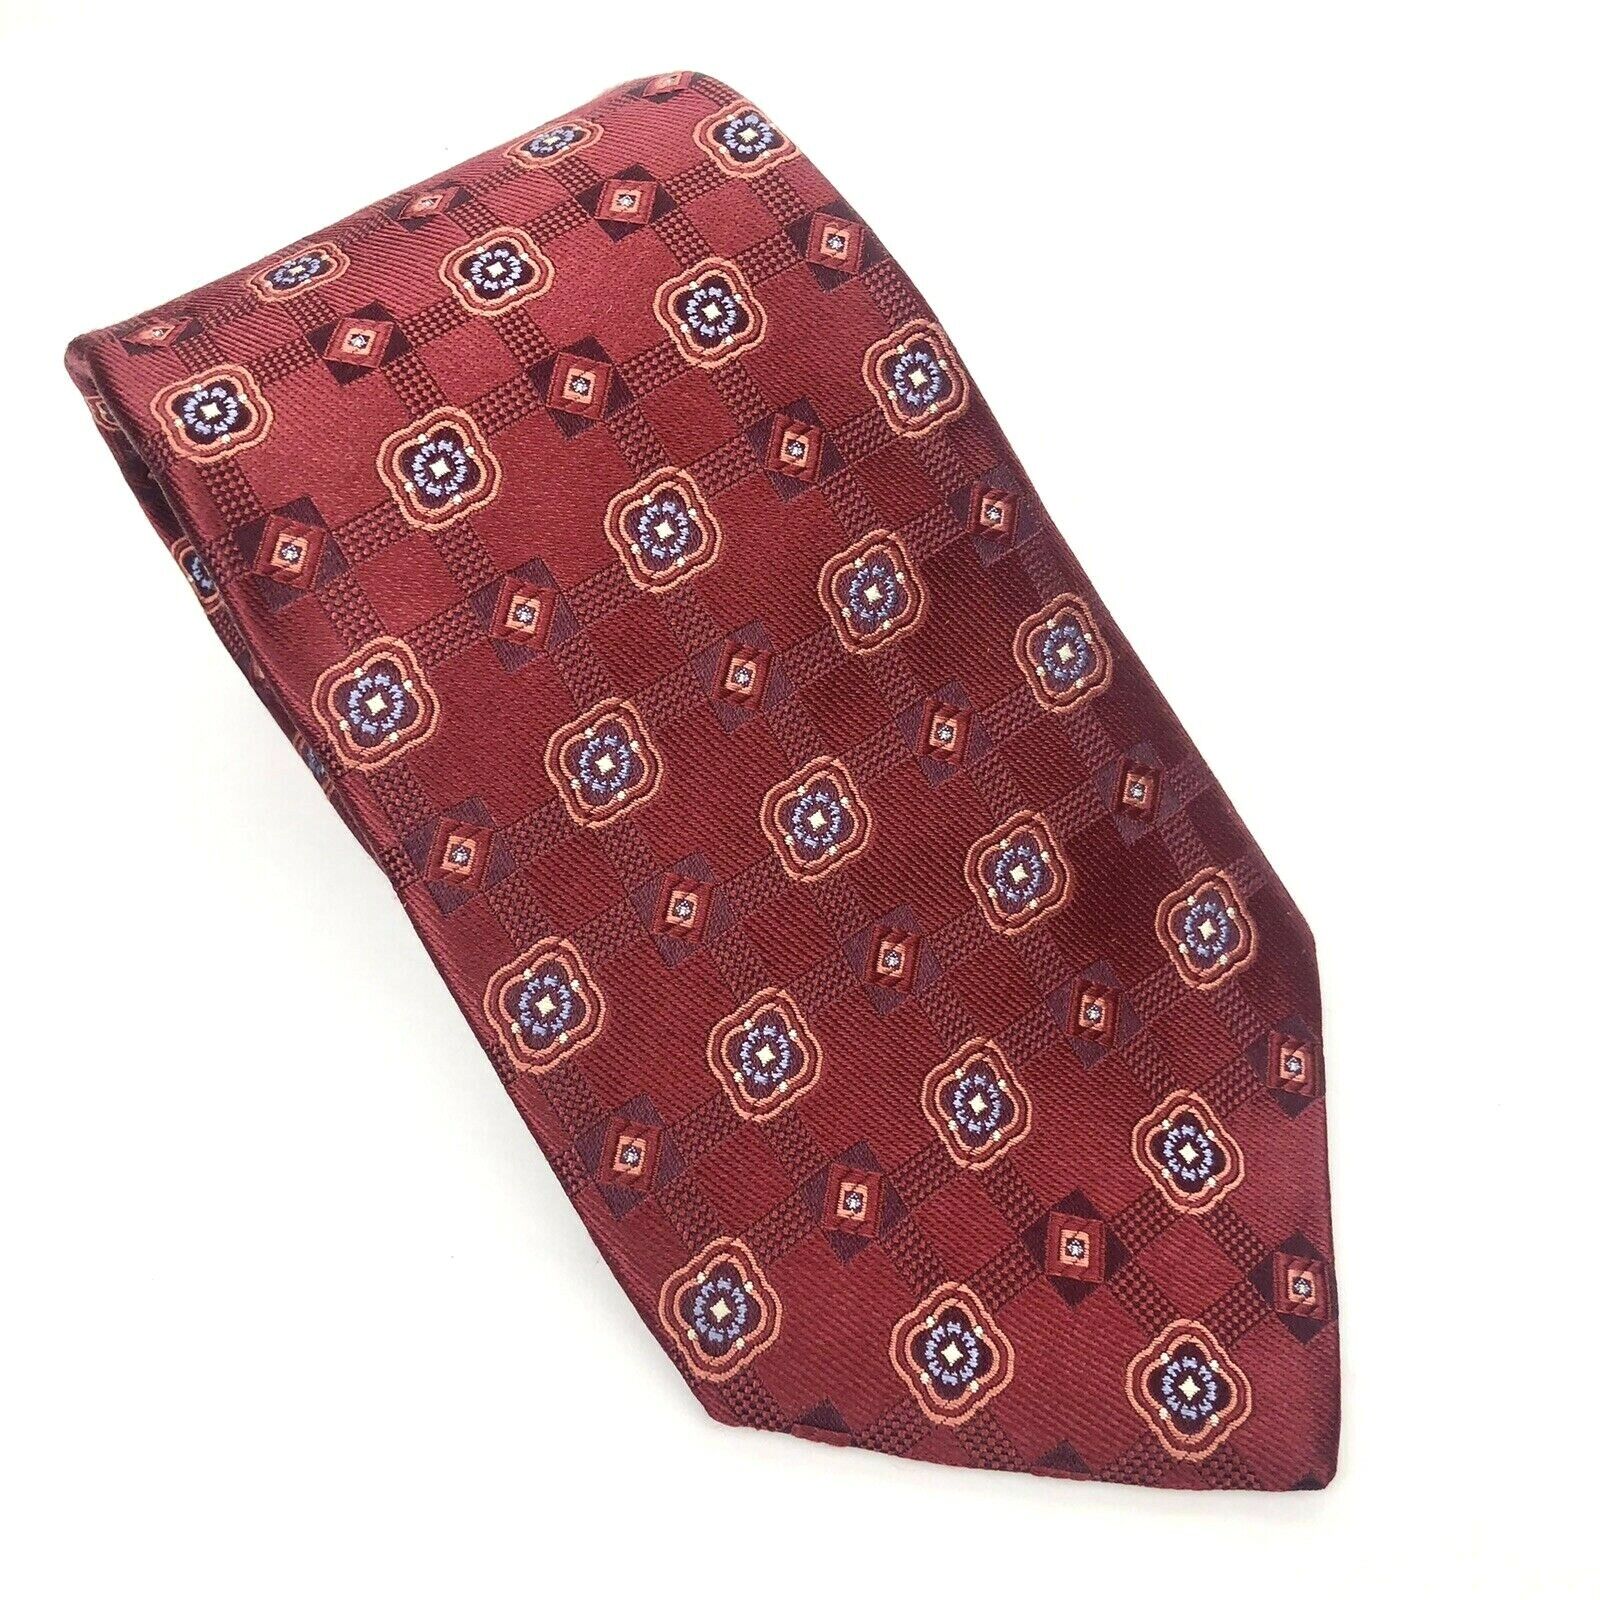 Hart Schaffner Marx Tie Silk Necktie Geometric Check Burgundy Made in USA